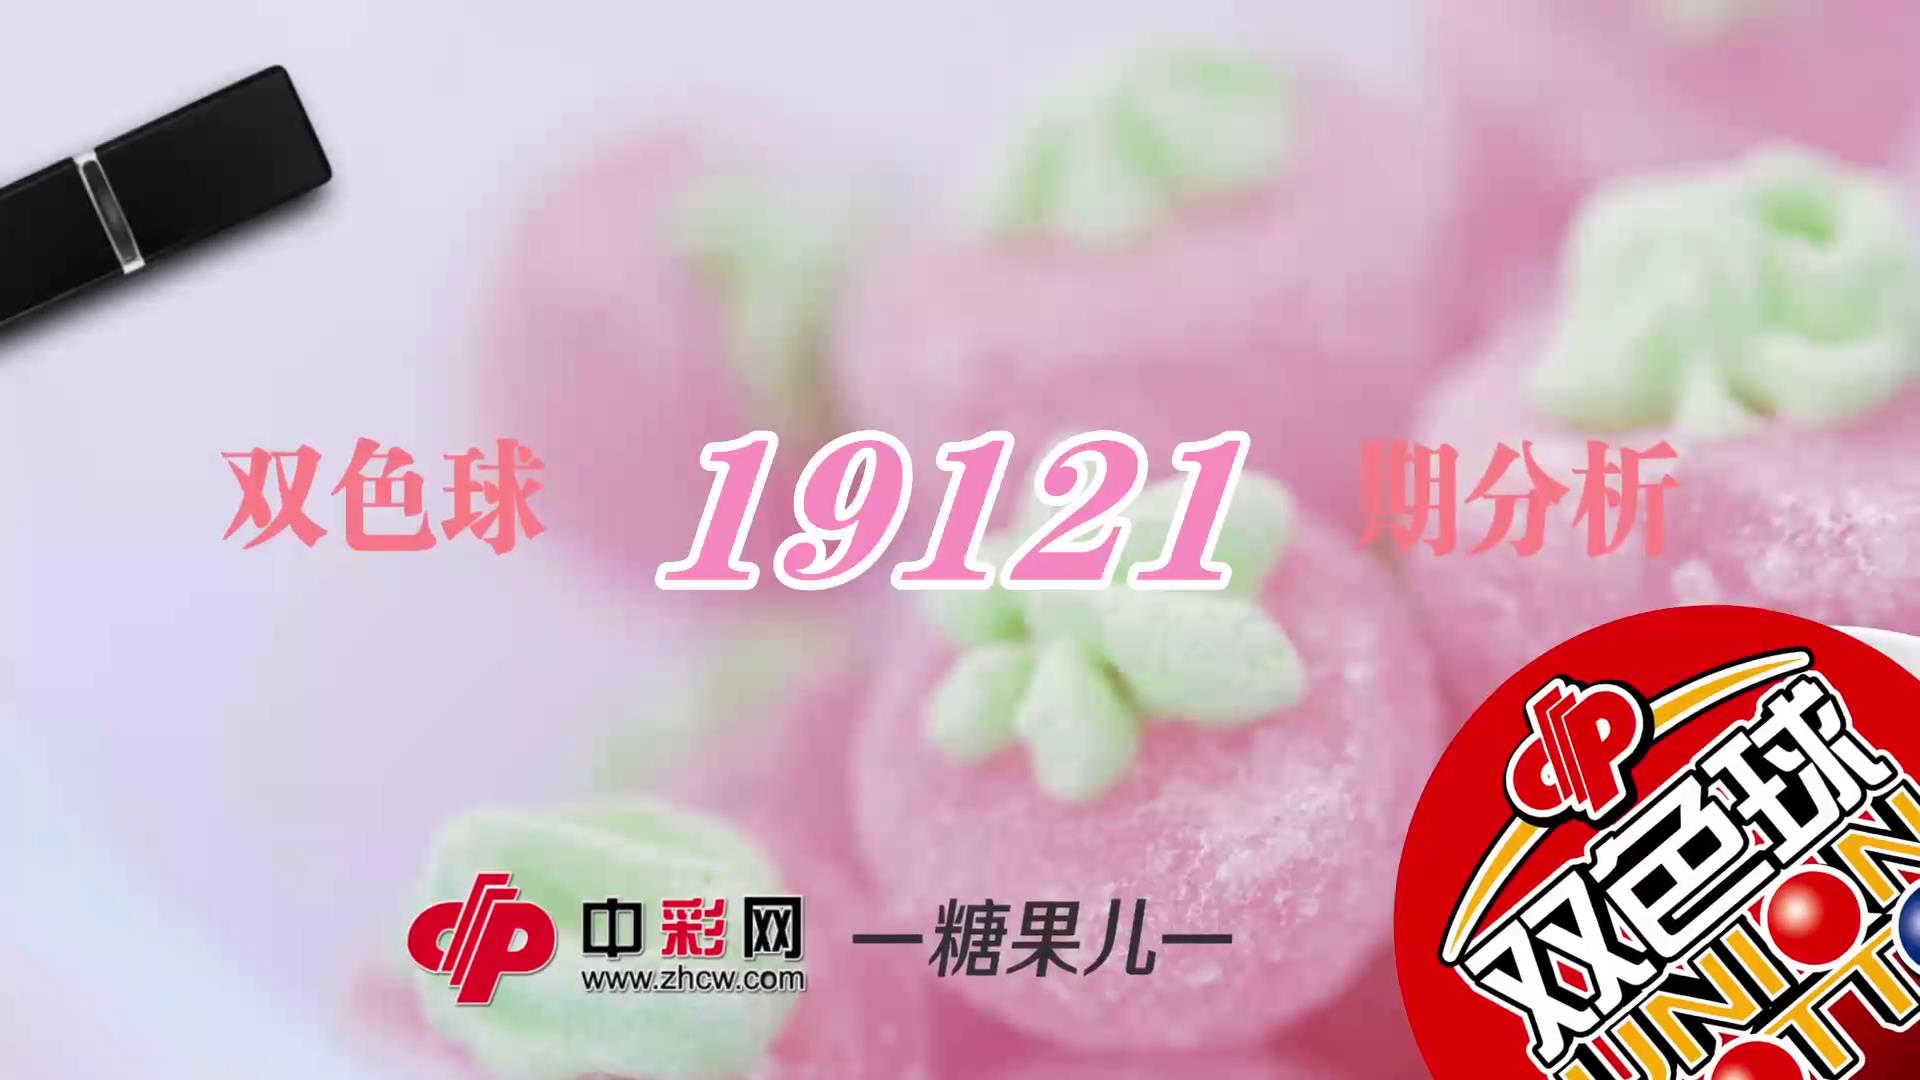 【中彩视频】糖果儿双色球第19121期